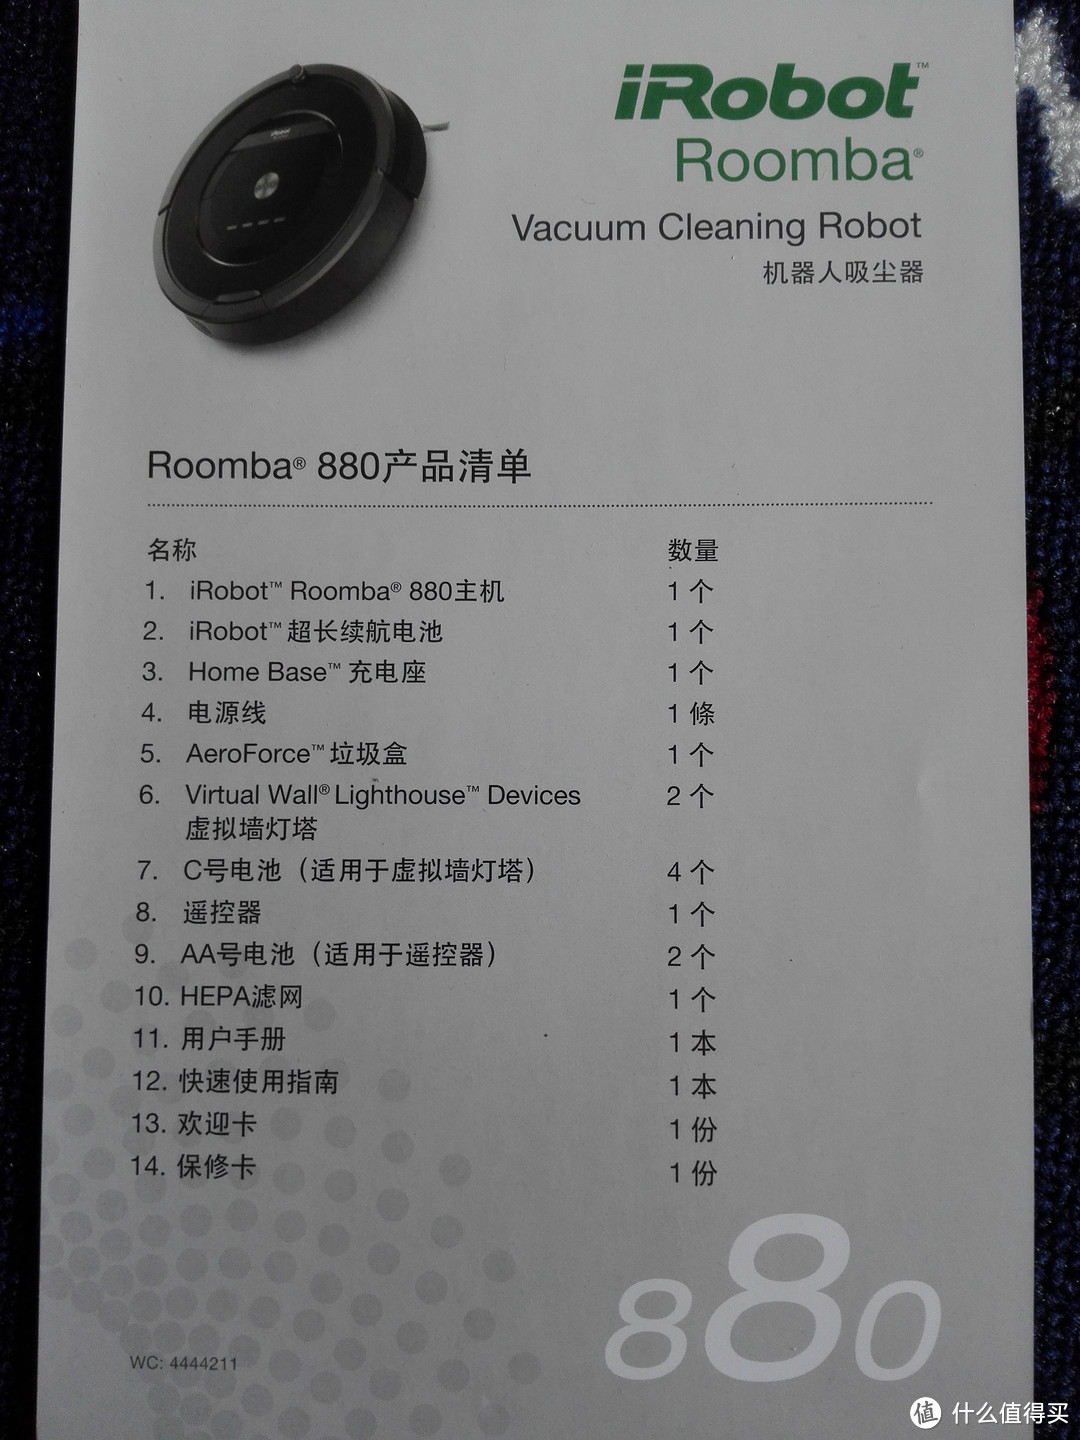 中文清单，一目了然。印刷质量是原版水平，不用担心是水货冒充。